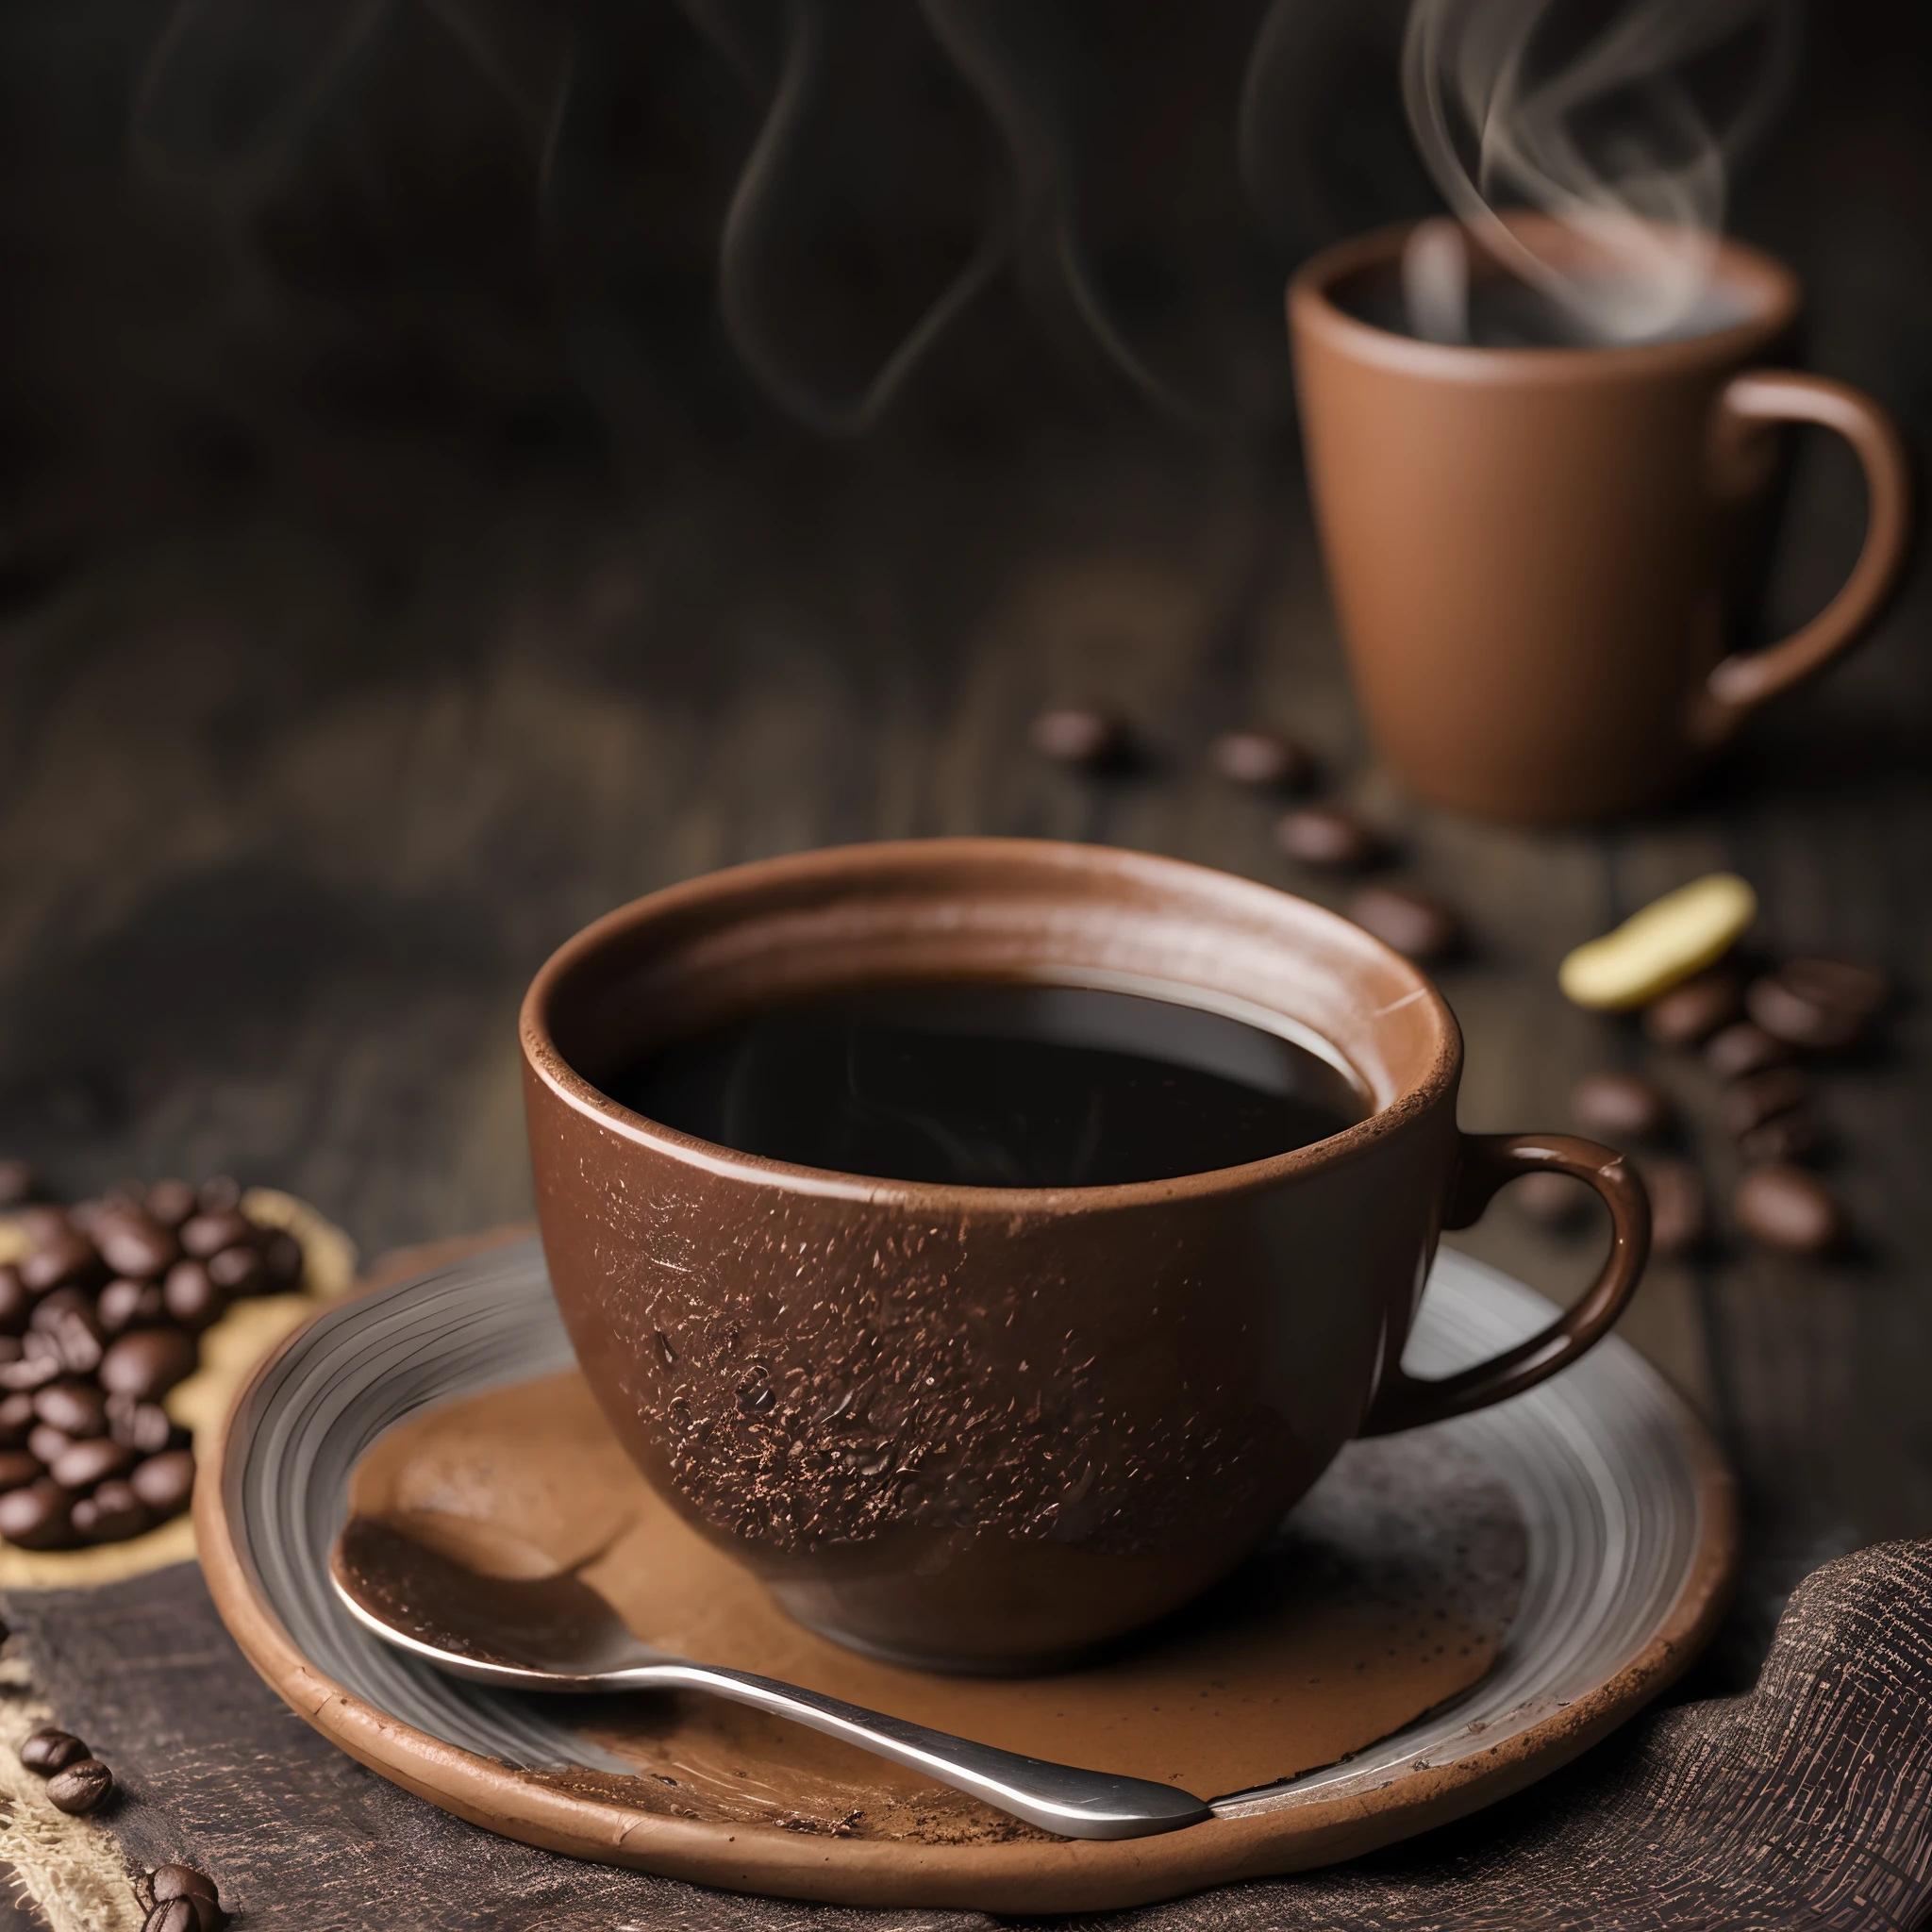 café tostado y frijoles esparcidos sobre un paño con una taza de café de arcilla, humo suave fotografiado con una cámara macro ultra realista HDR de 35 mm